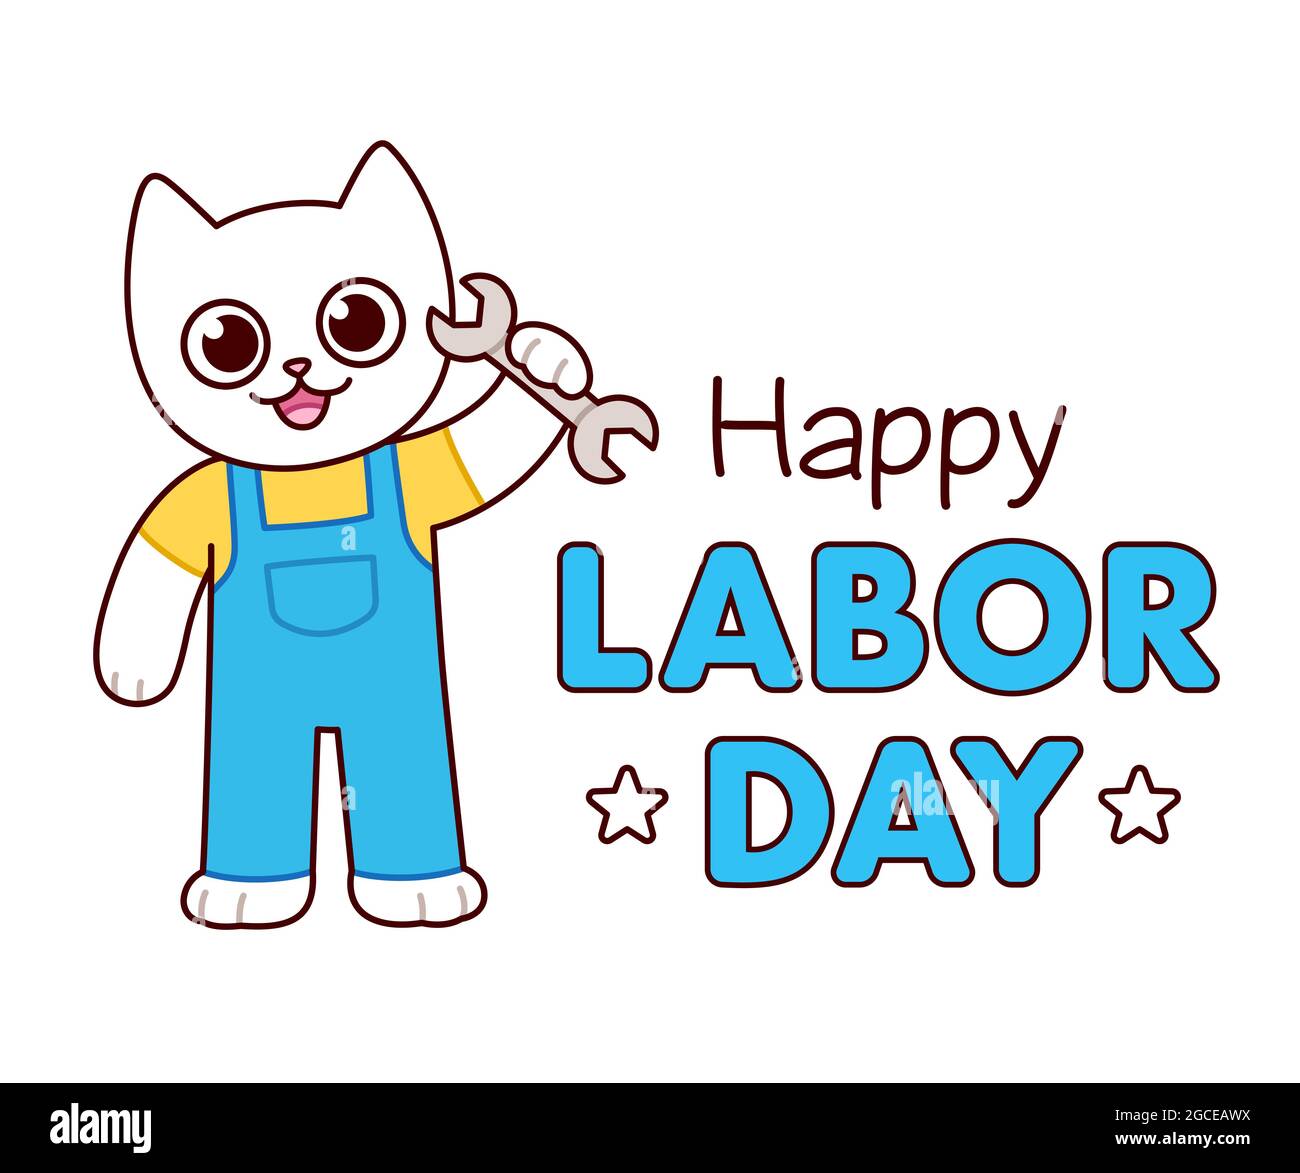 Happy Labor Day, niedlich Cartoon Katze Zeichnung halten Schraubenschlüssel Werkzeug. Witziger Arbeitercharakter. Vektorgrafik Clip Art Illustration. Stock Vektor